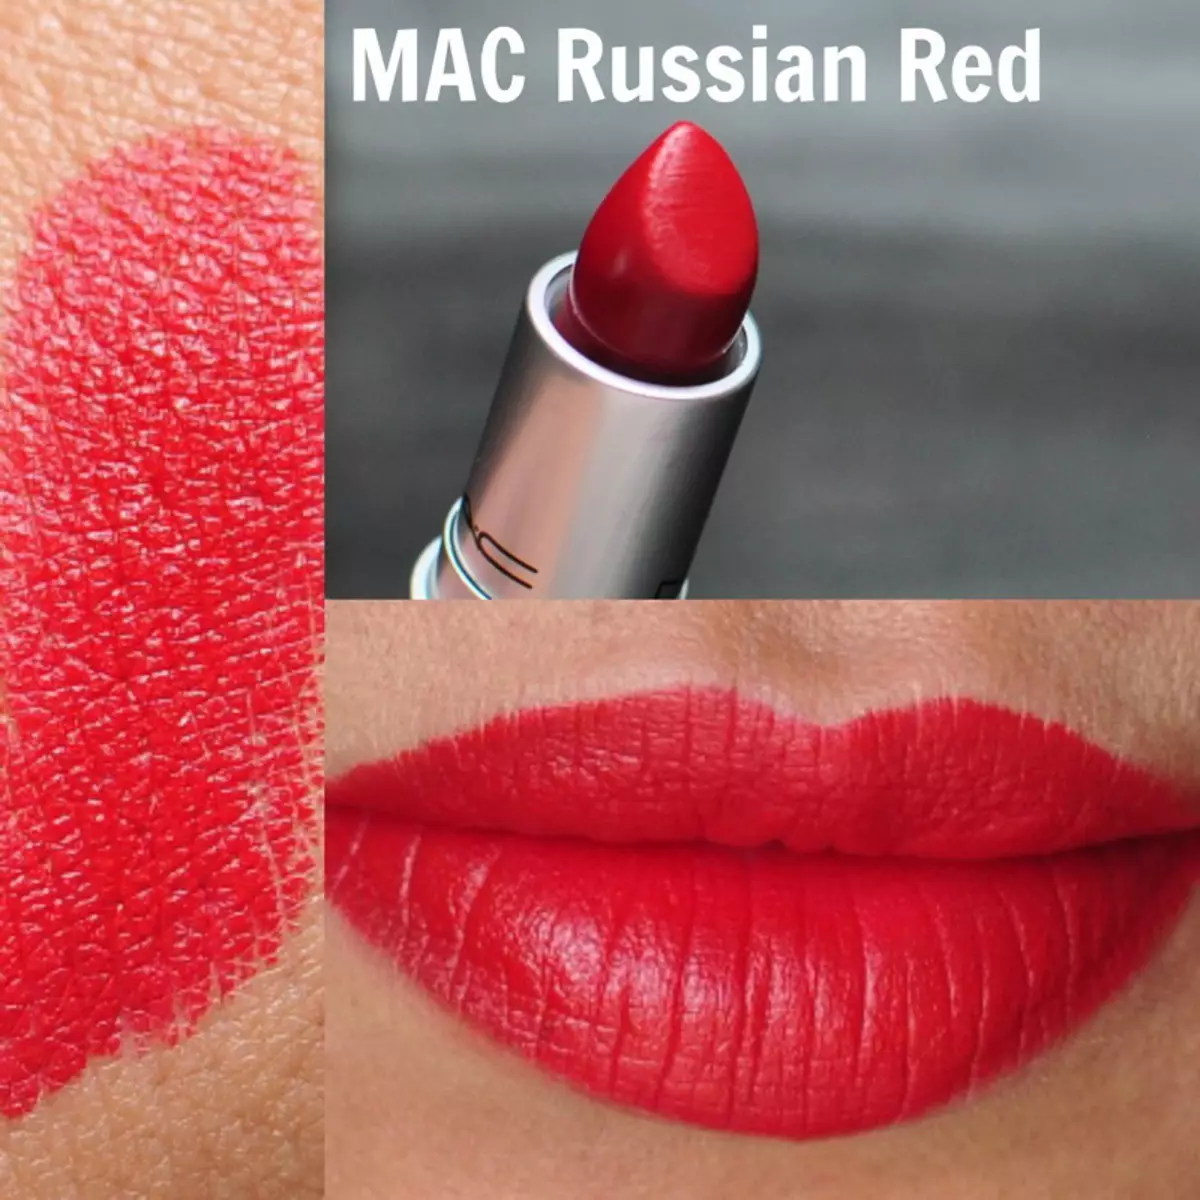 Kosmetika MAC: Sady nejlépe odstupujících a dekorativních produktů společnosti, recenze kupujících a make-up umělců 4724_9